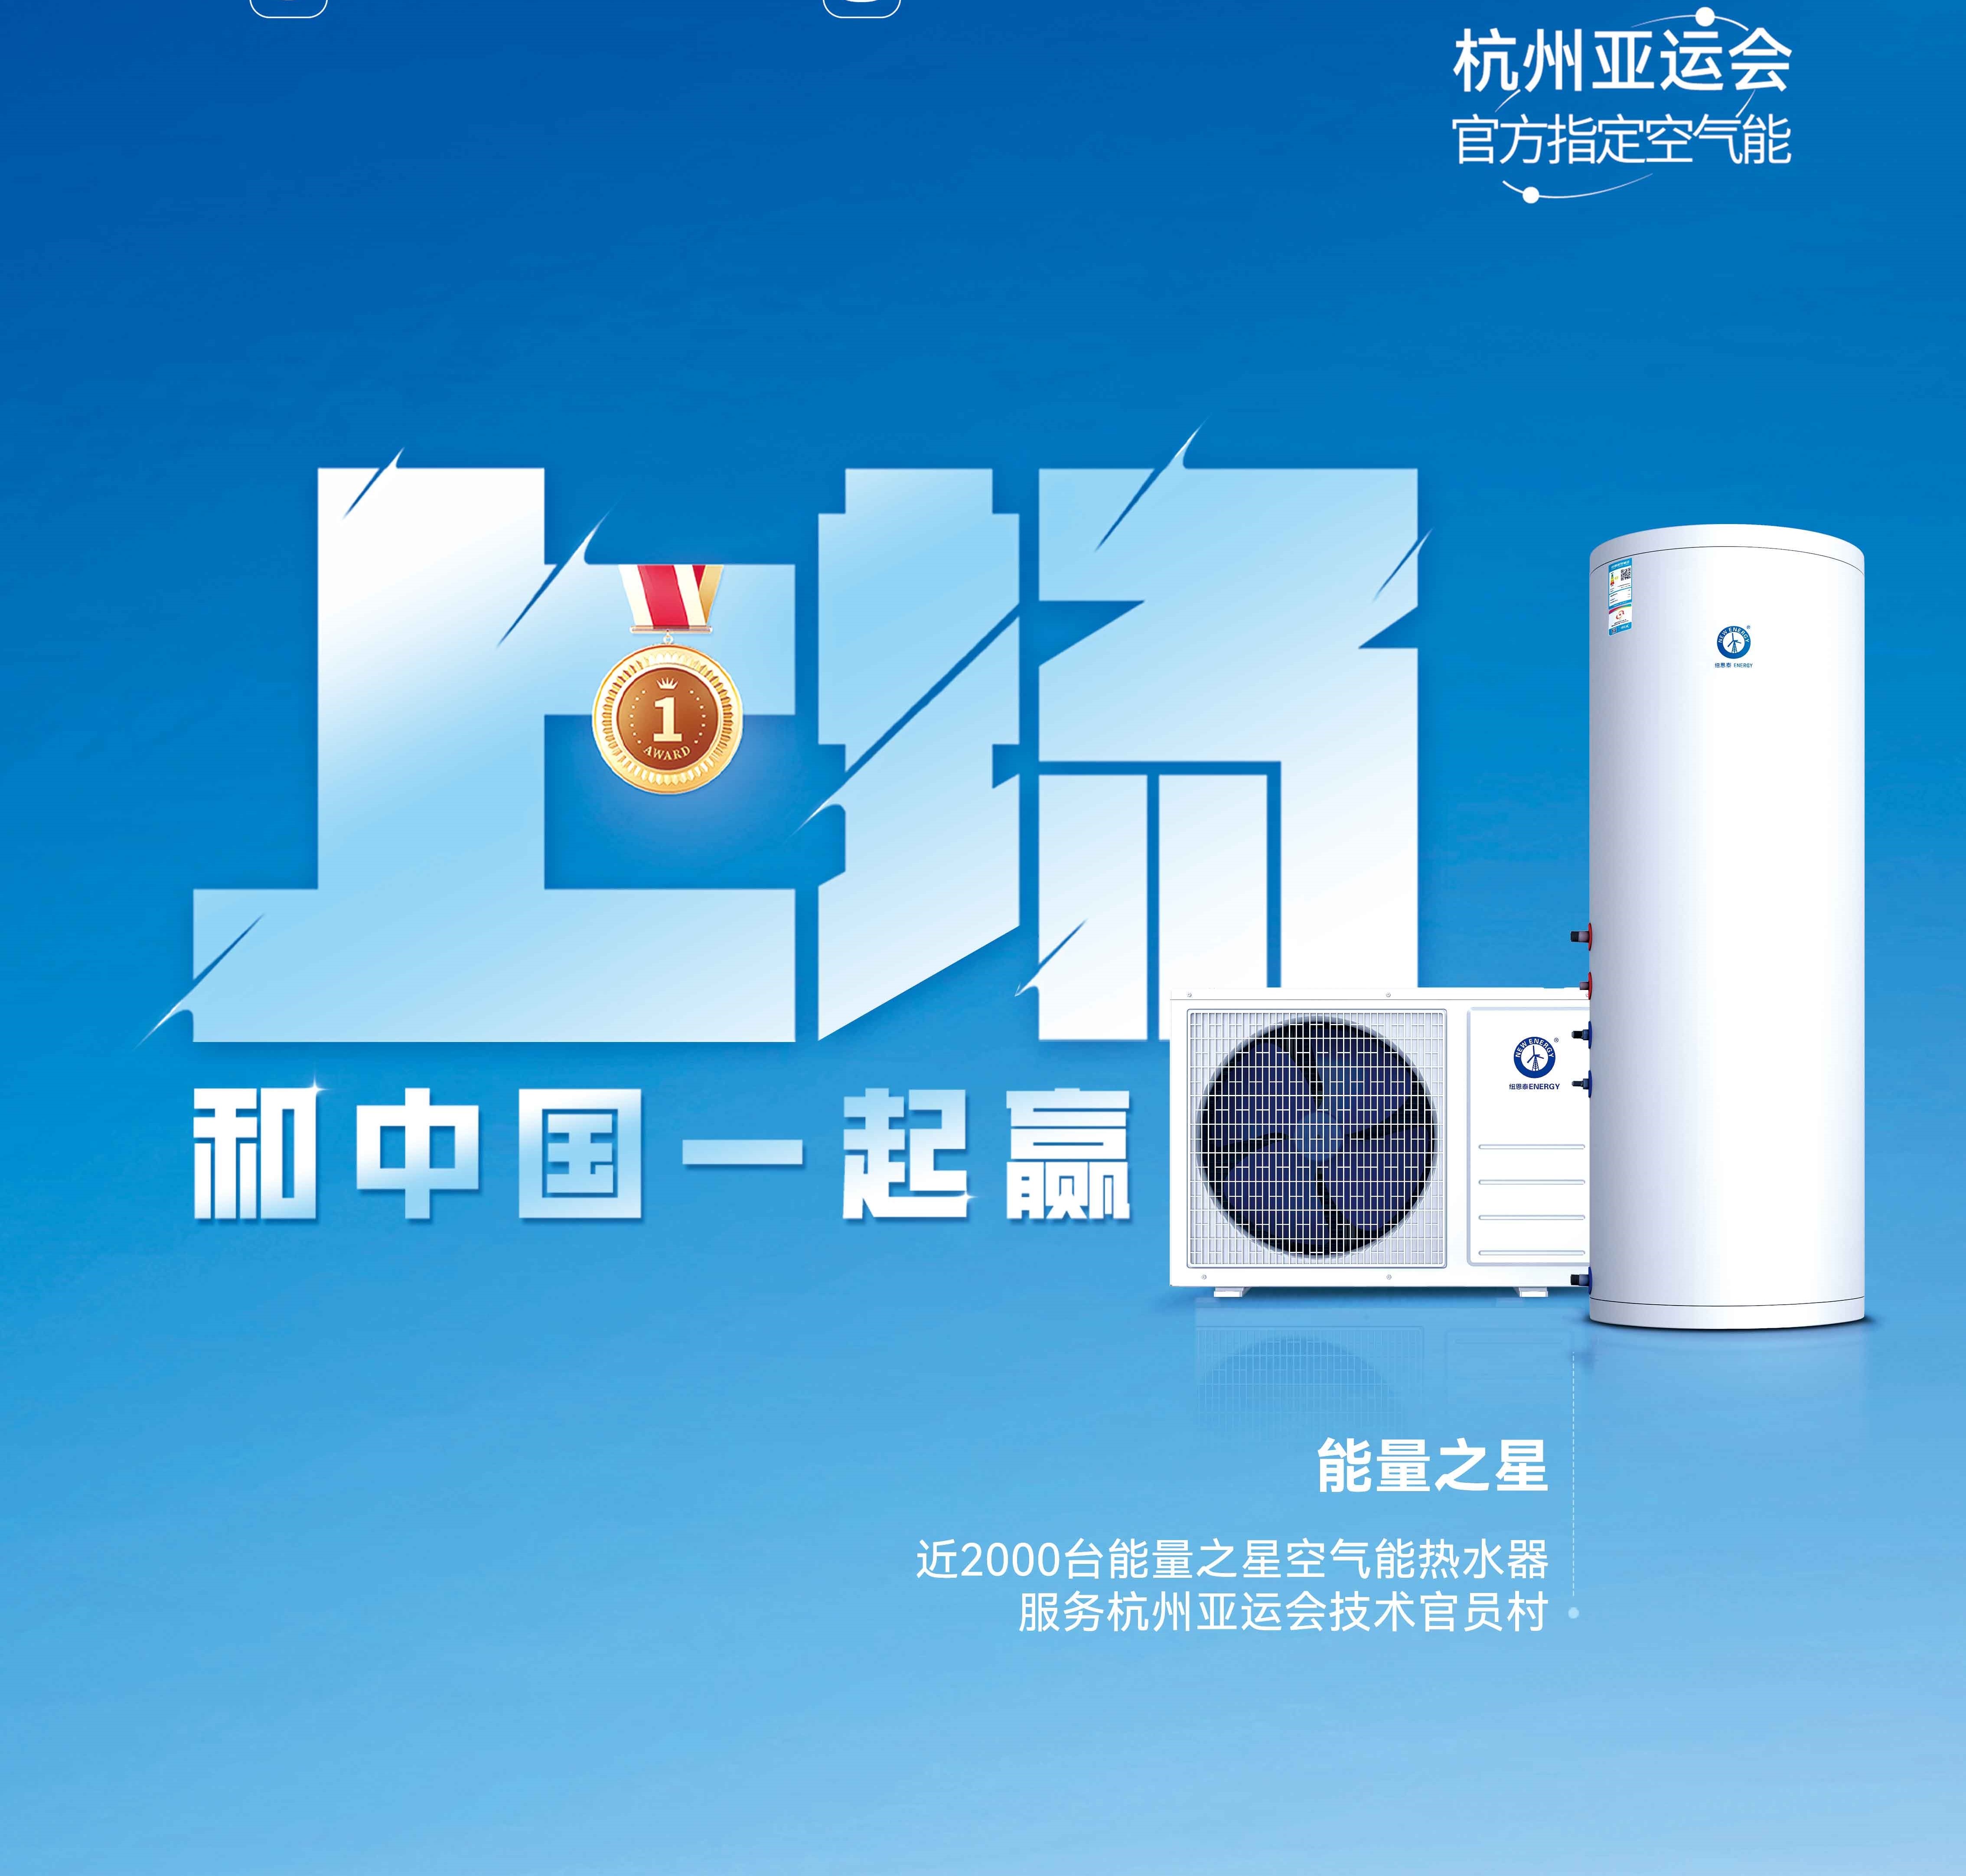 【欧洲杯球赛在哪里买空气能热水器】杭州亚运会亚运技术官员村的热水器用的是哪个供应商的产品？